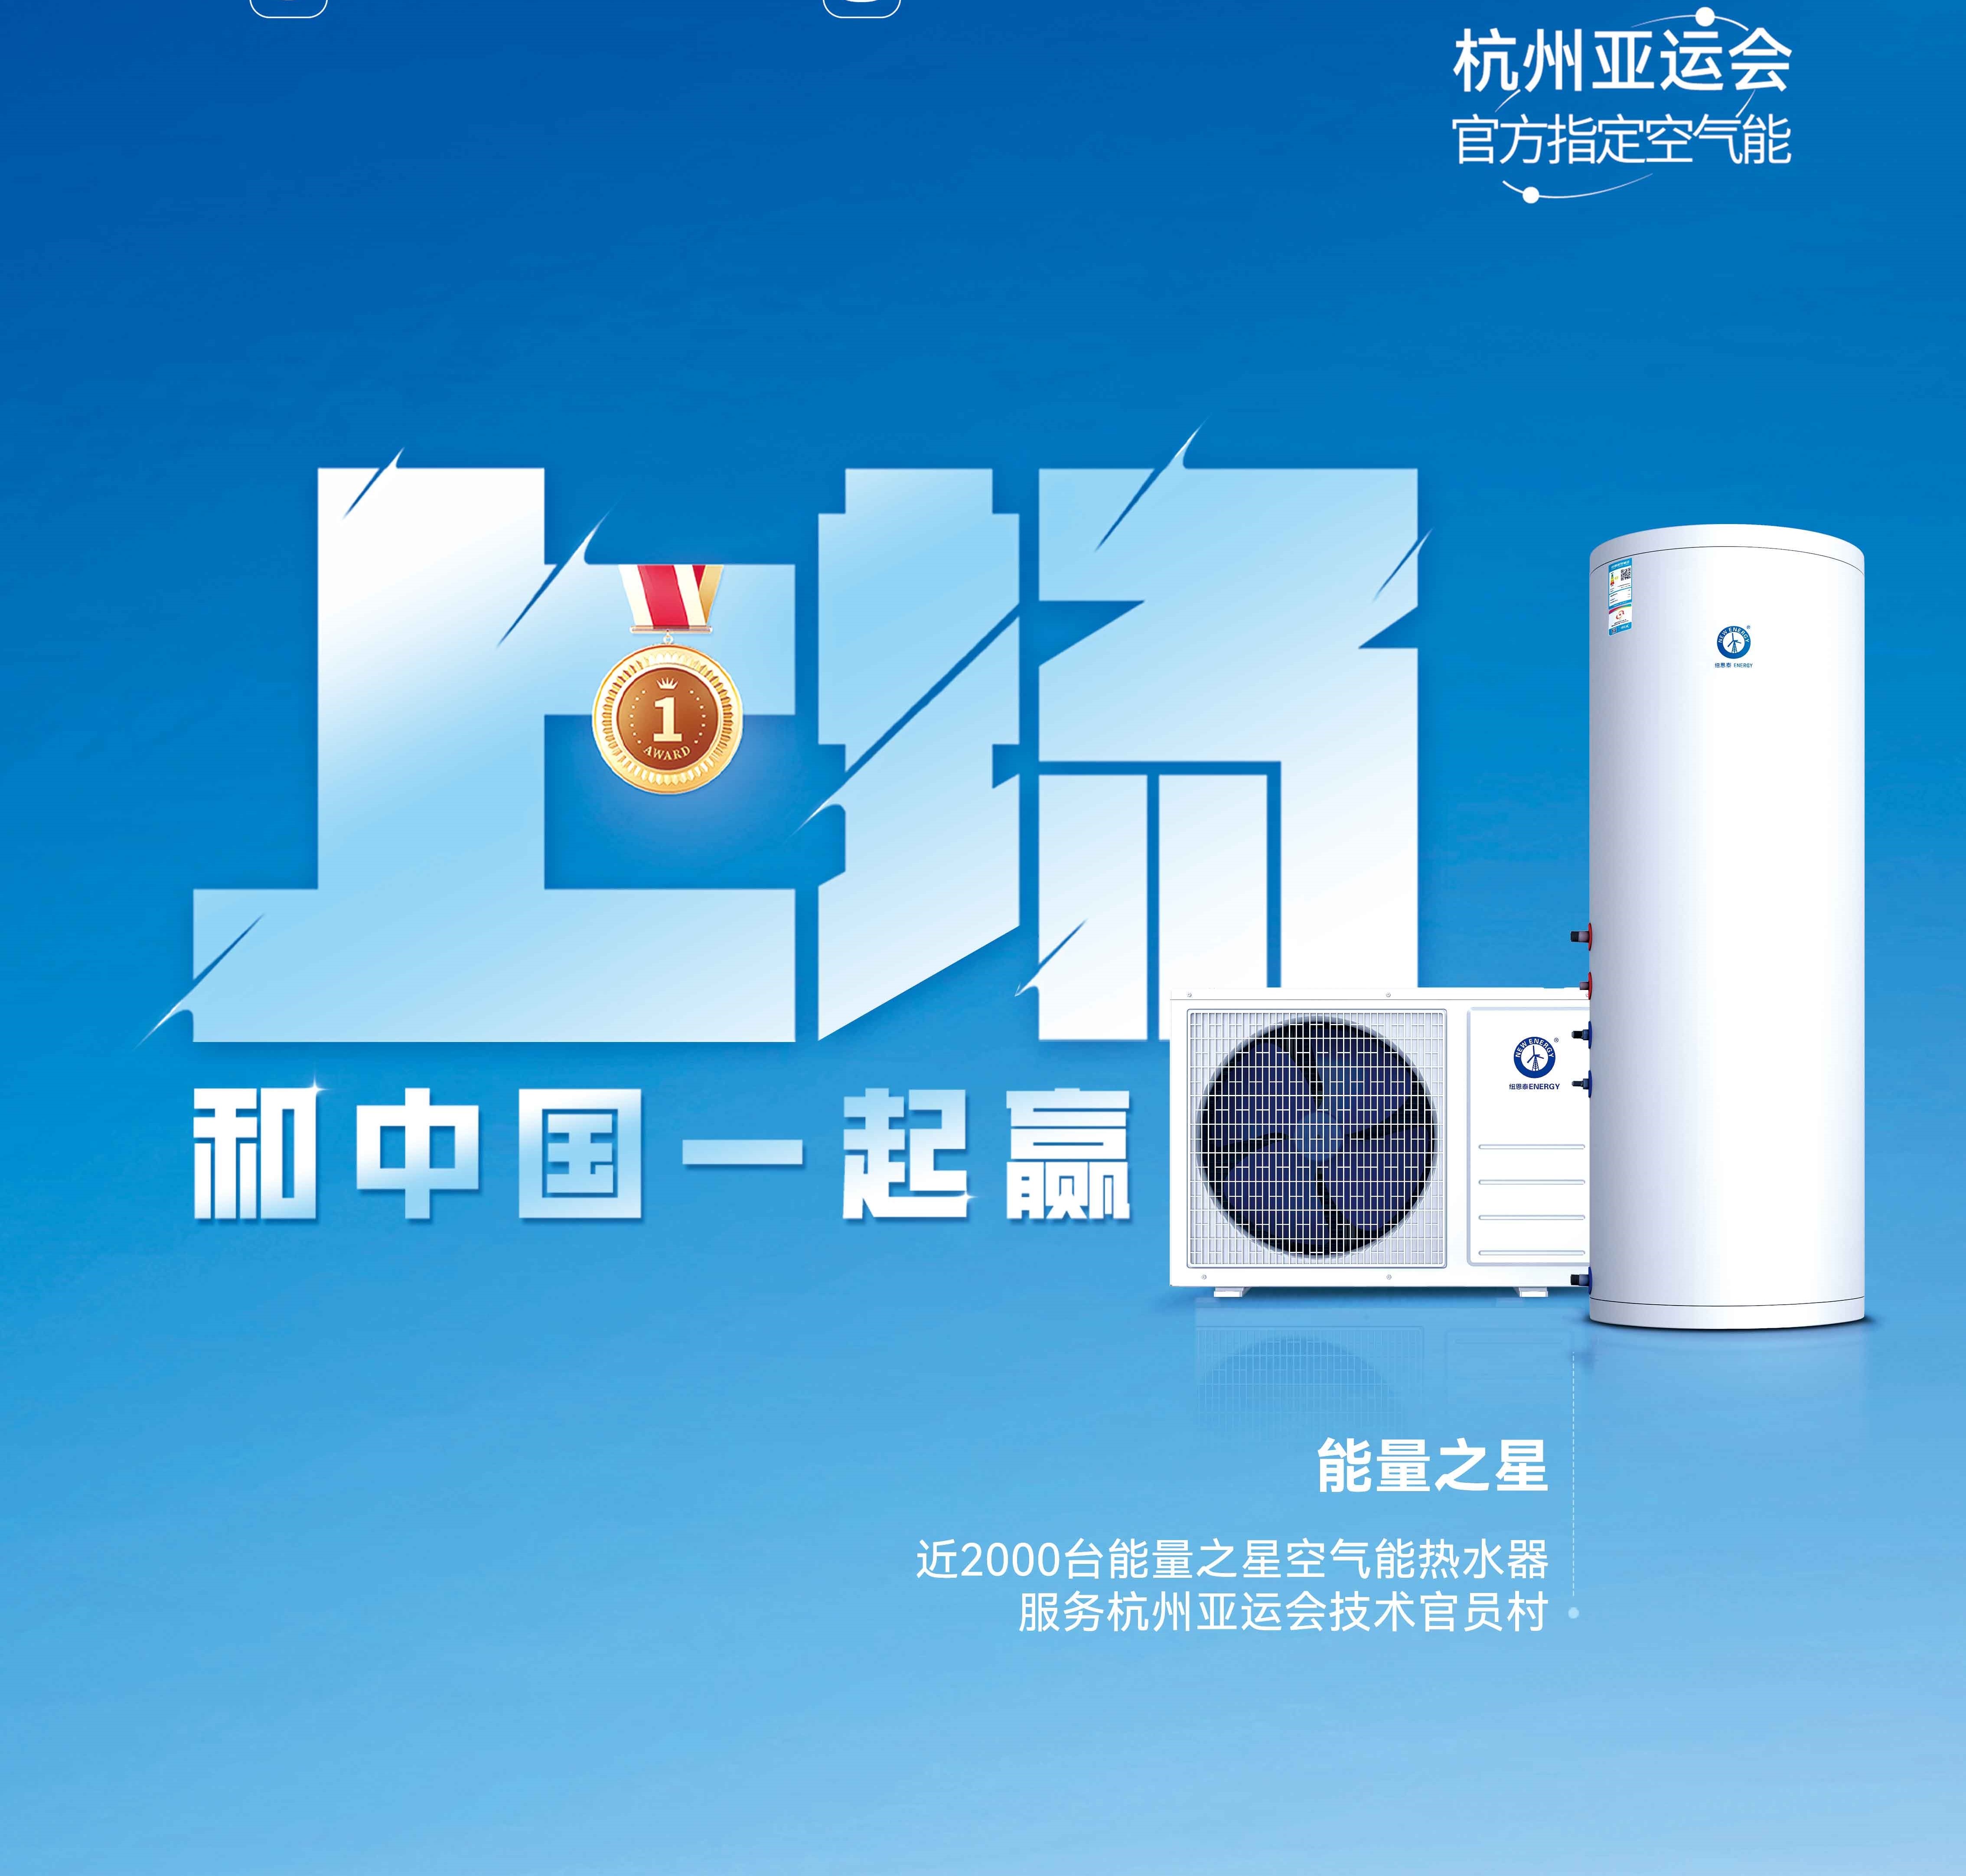 【欧洲杯球赛在哪里买空气能热水器】杭州亚运会亚运技术官员村的热水器用的是哪个供应商的产品？